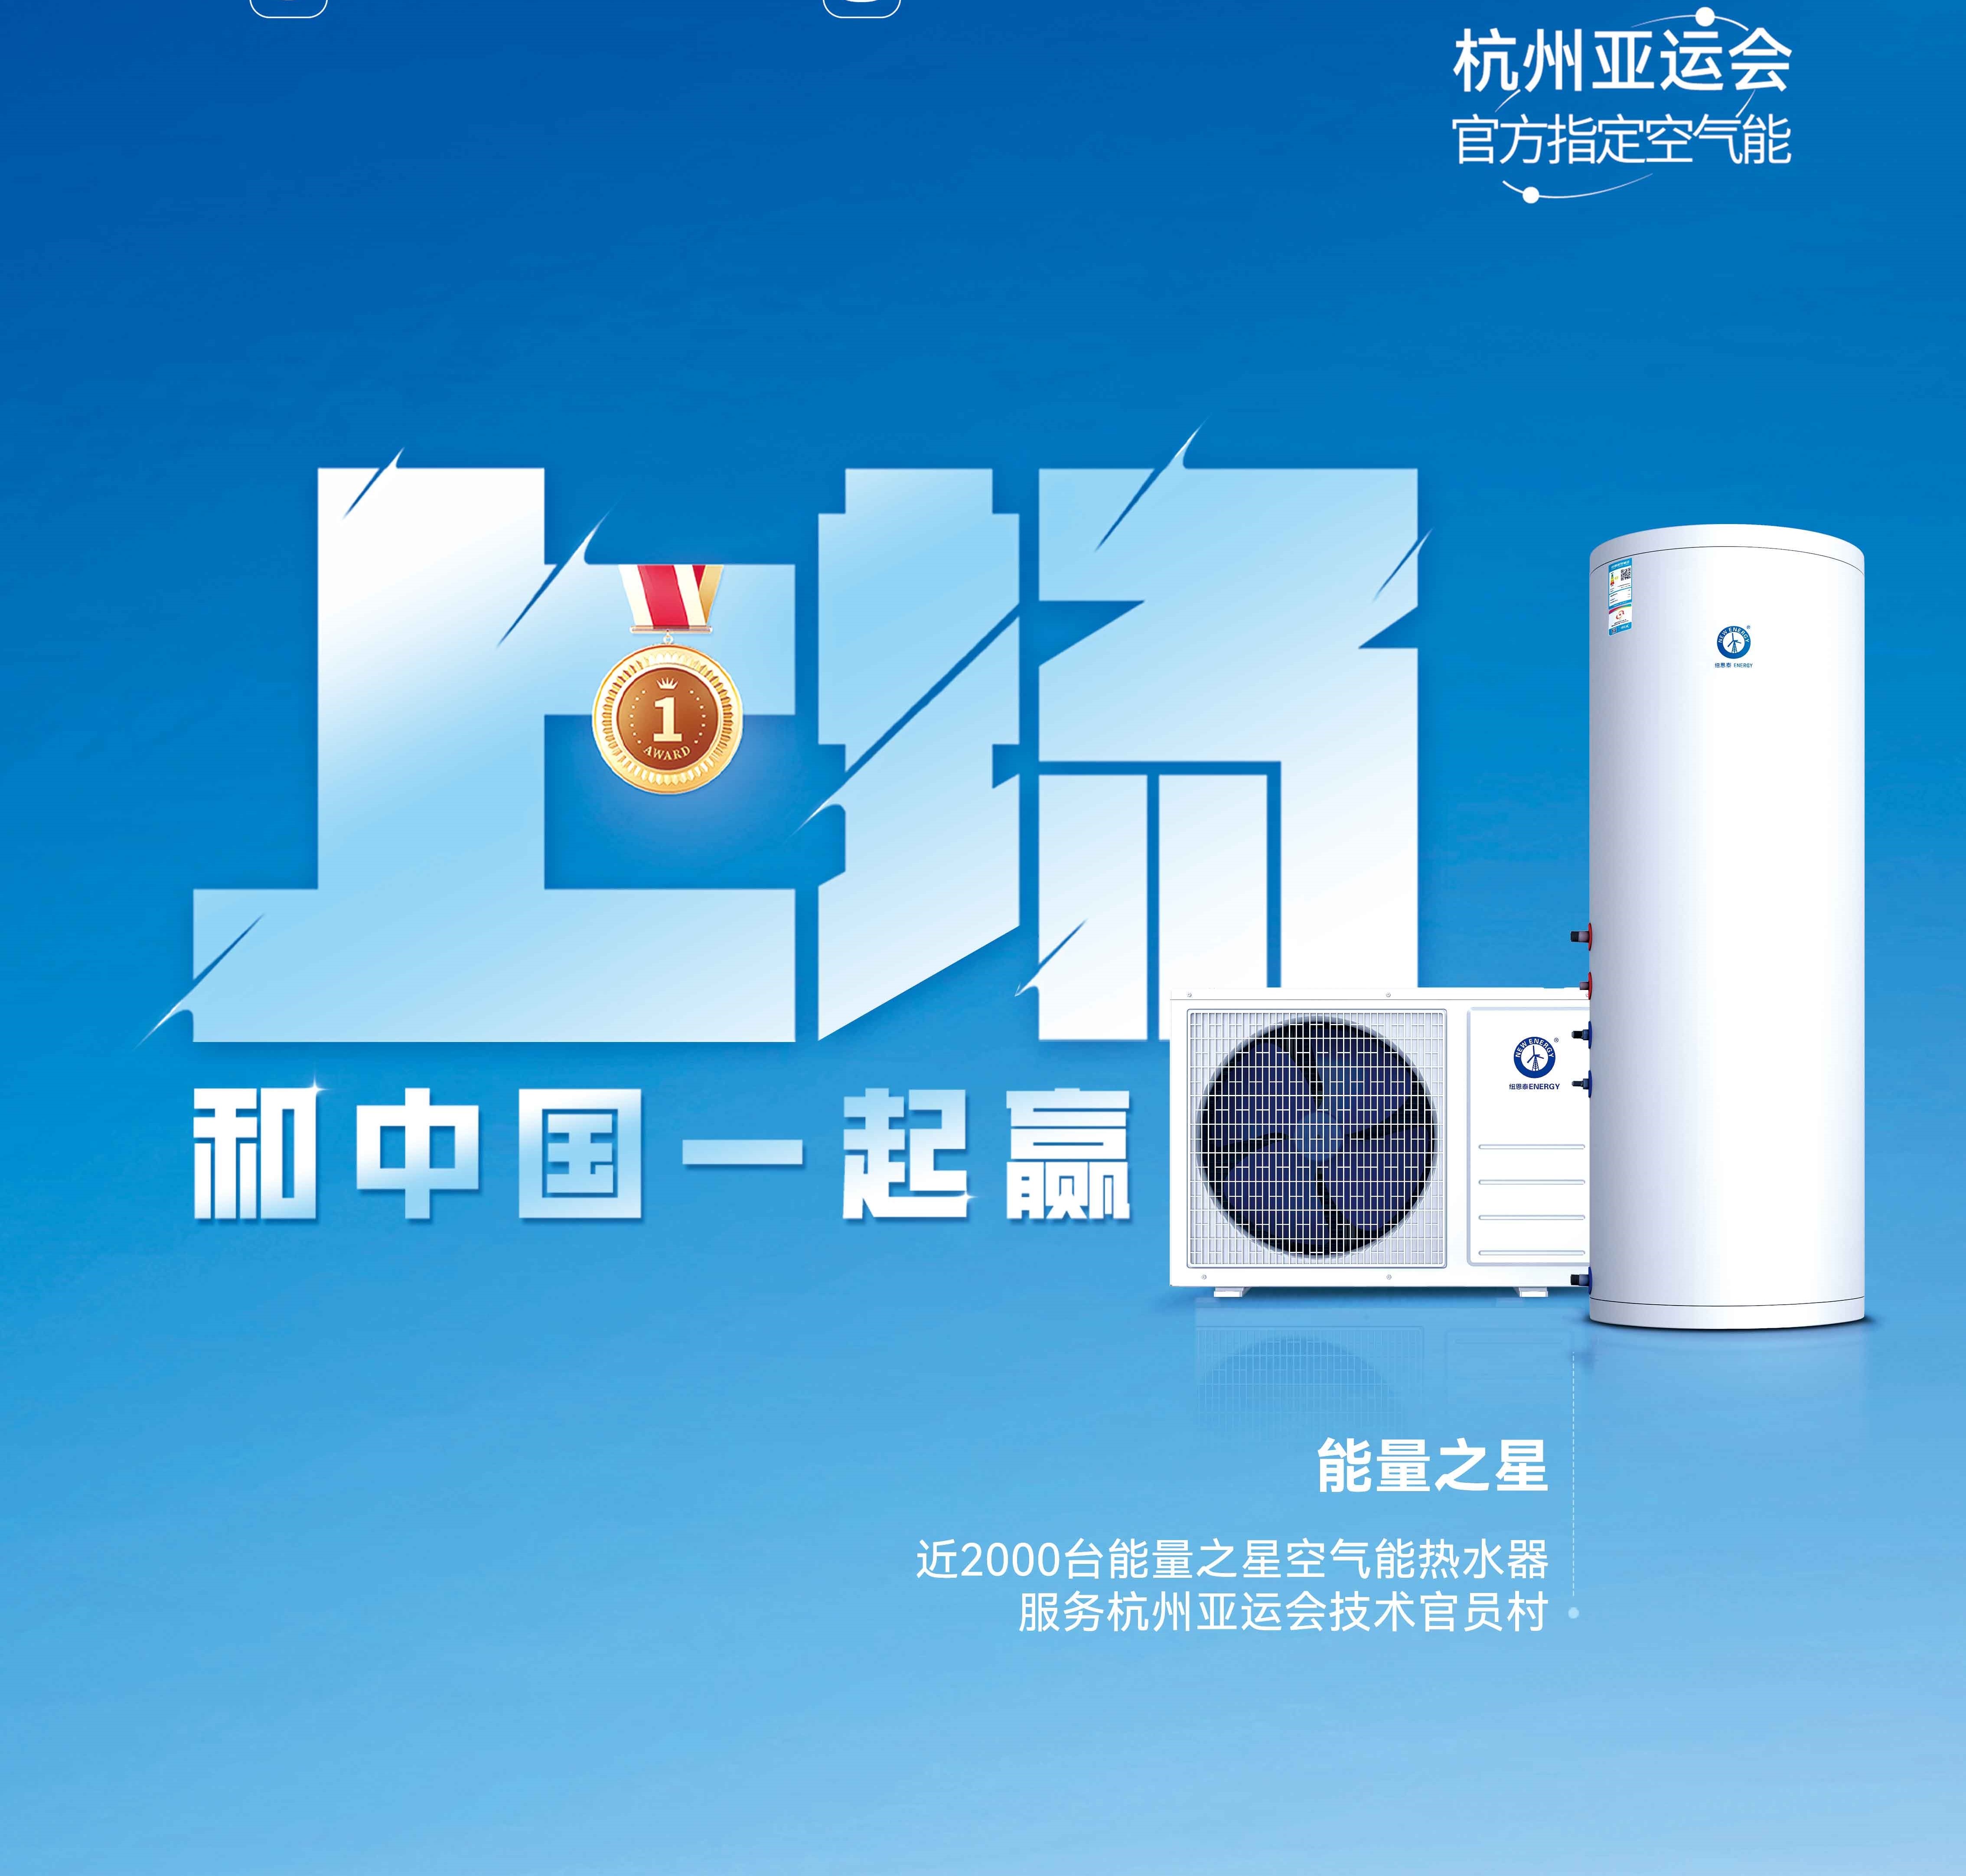 【欧洲杯球赛在哪里买空气能热水器】杭州亚运会亚运技术官员村的热水器用的是哪个供应商的产品？